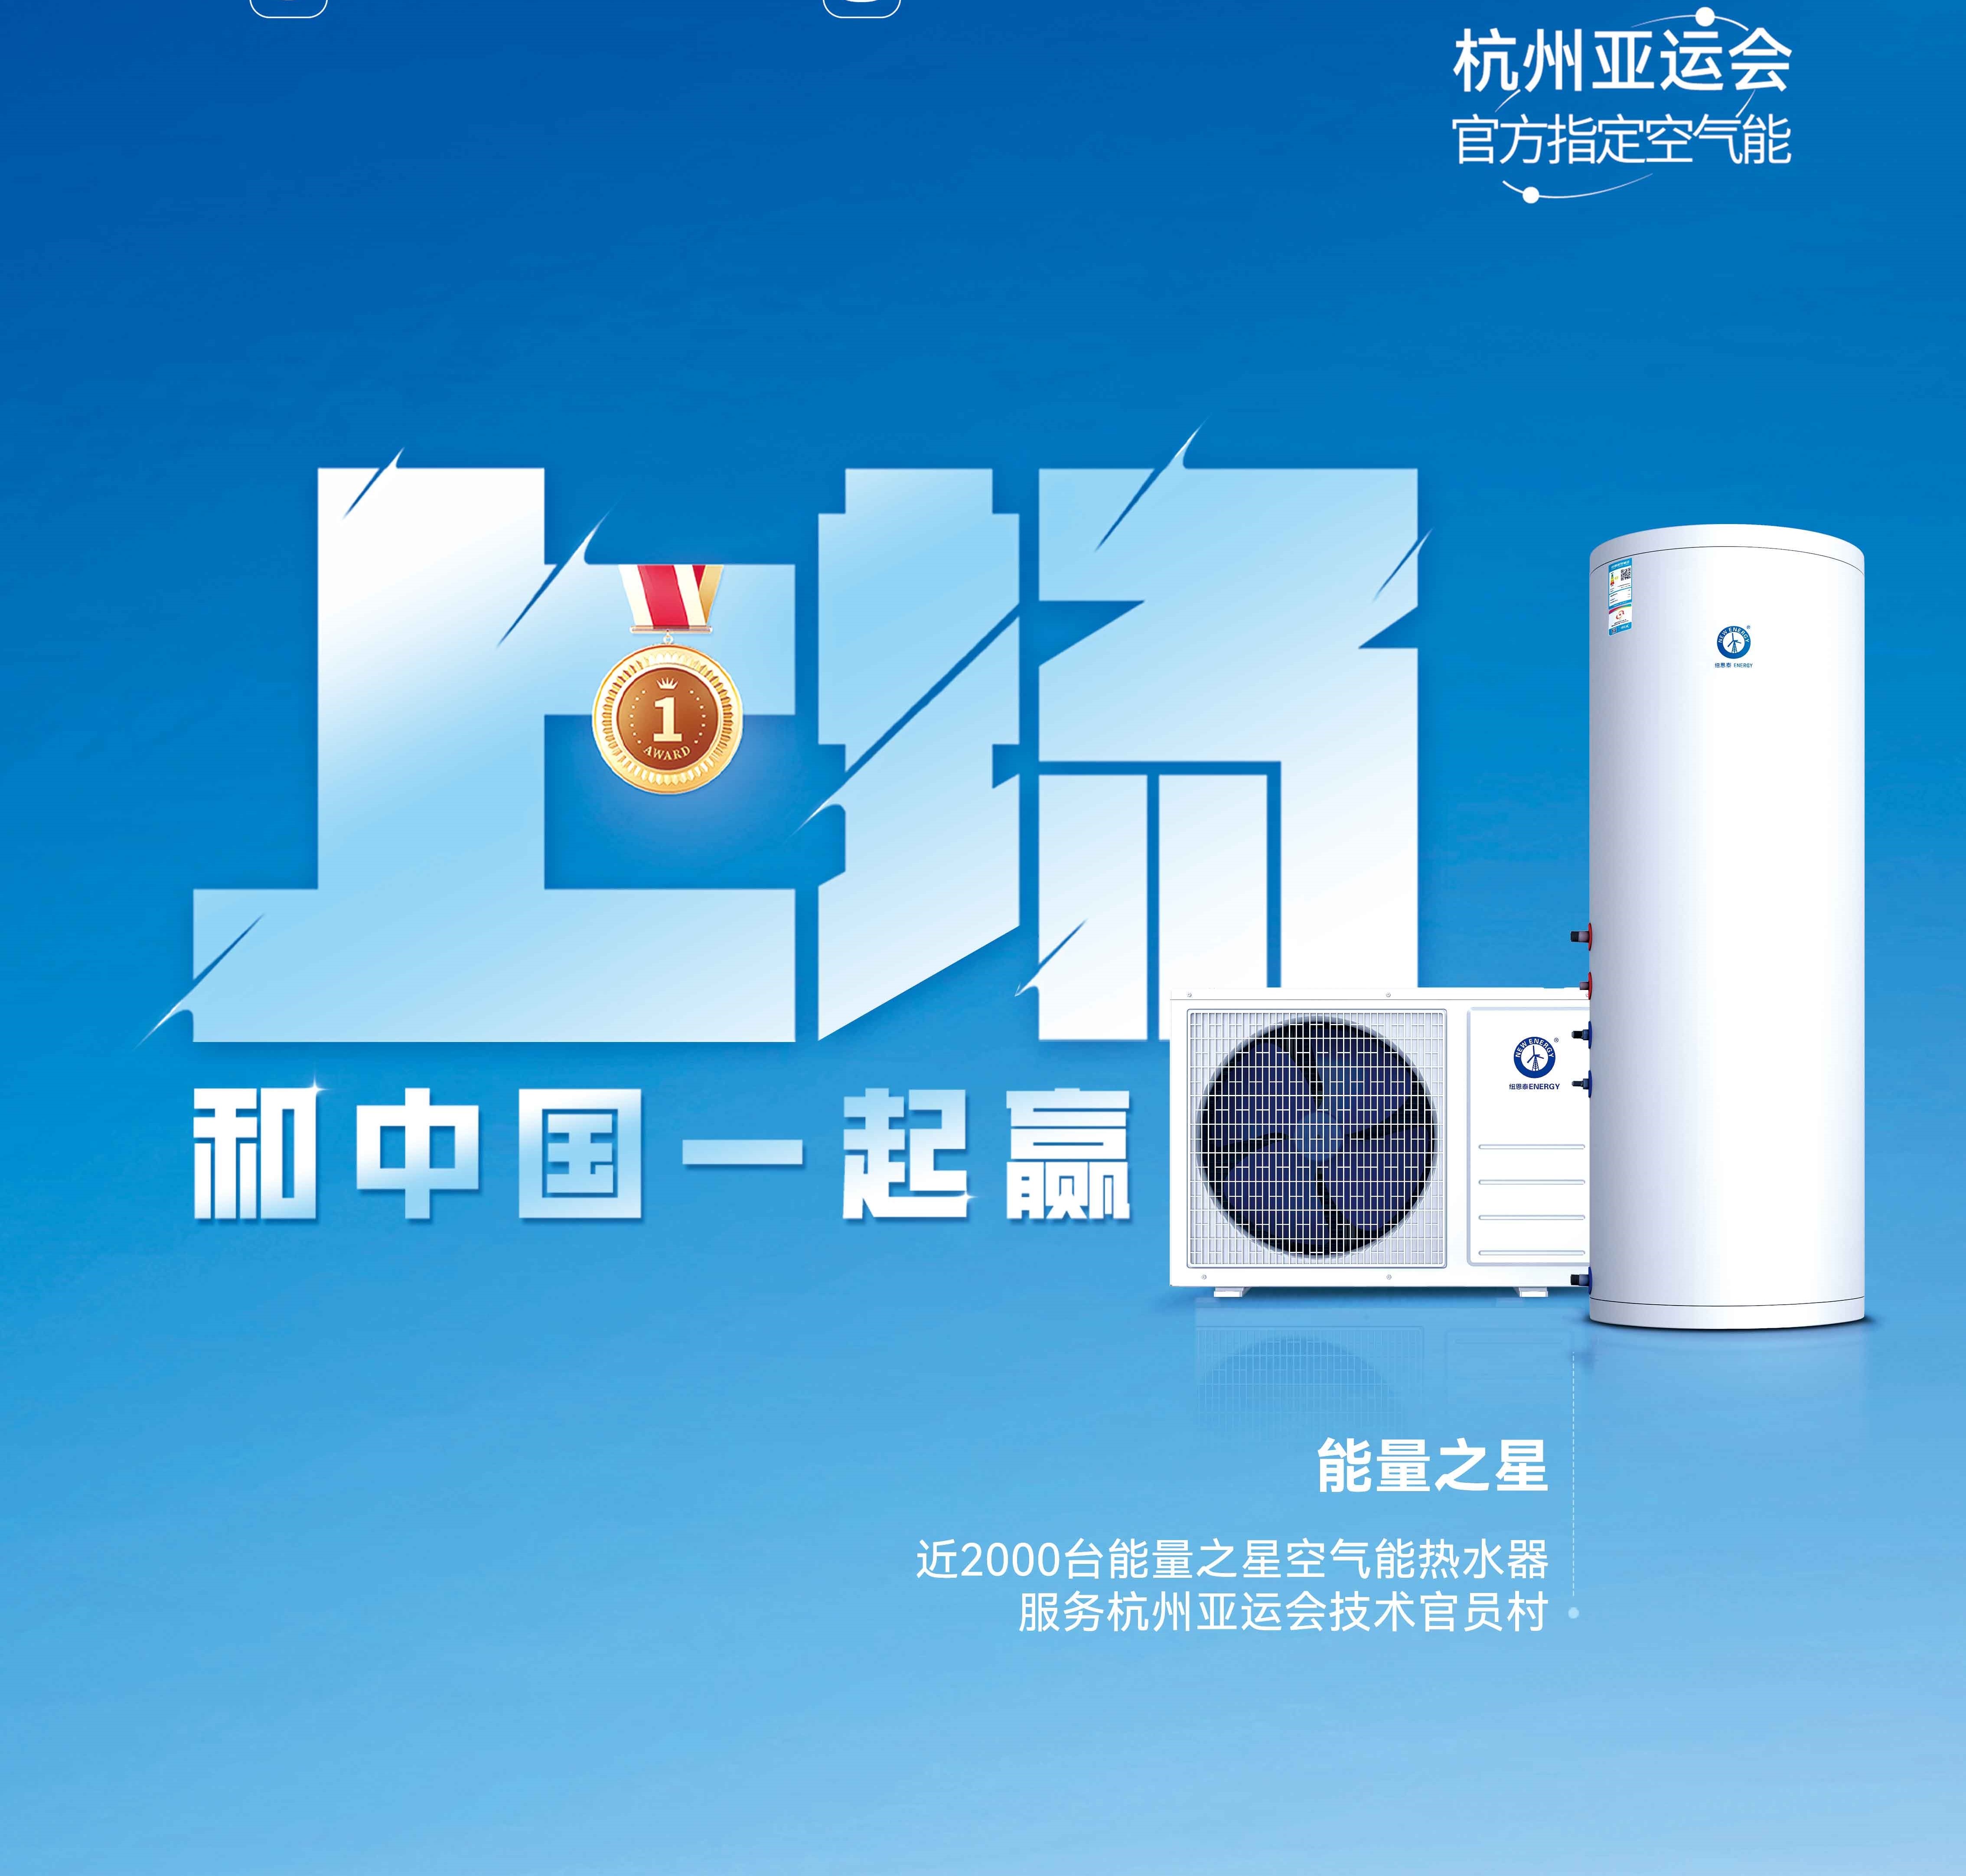 【欧洲杯球赛在哪里买空气能热水器】杭州亚运会亚运技术官员村的热水器用的是哪个供应商的产品？